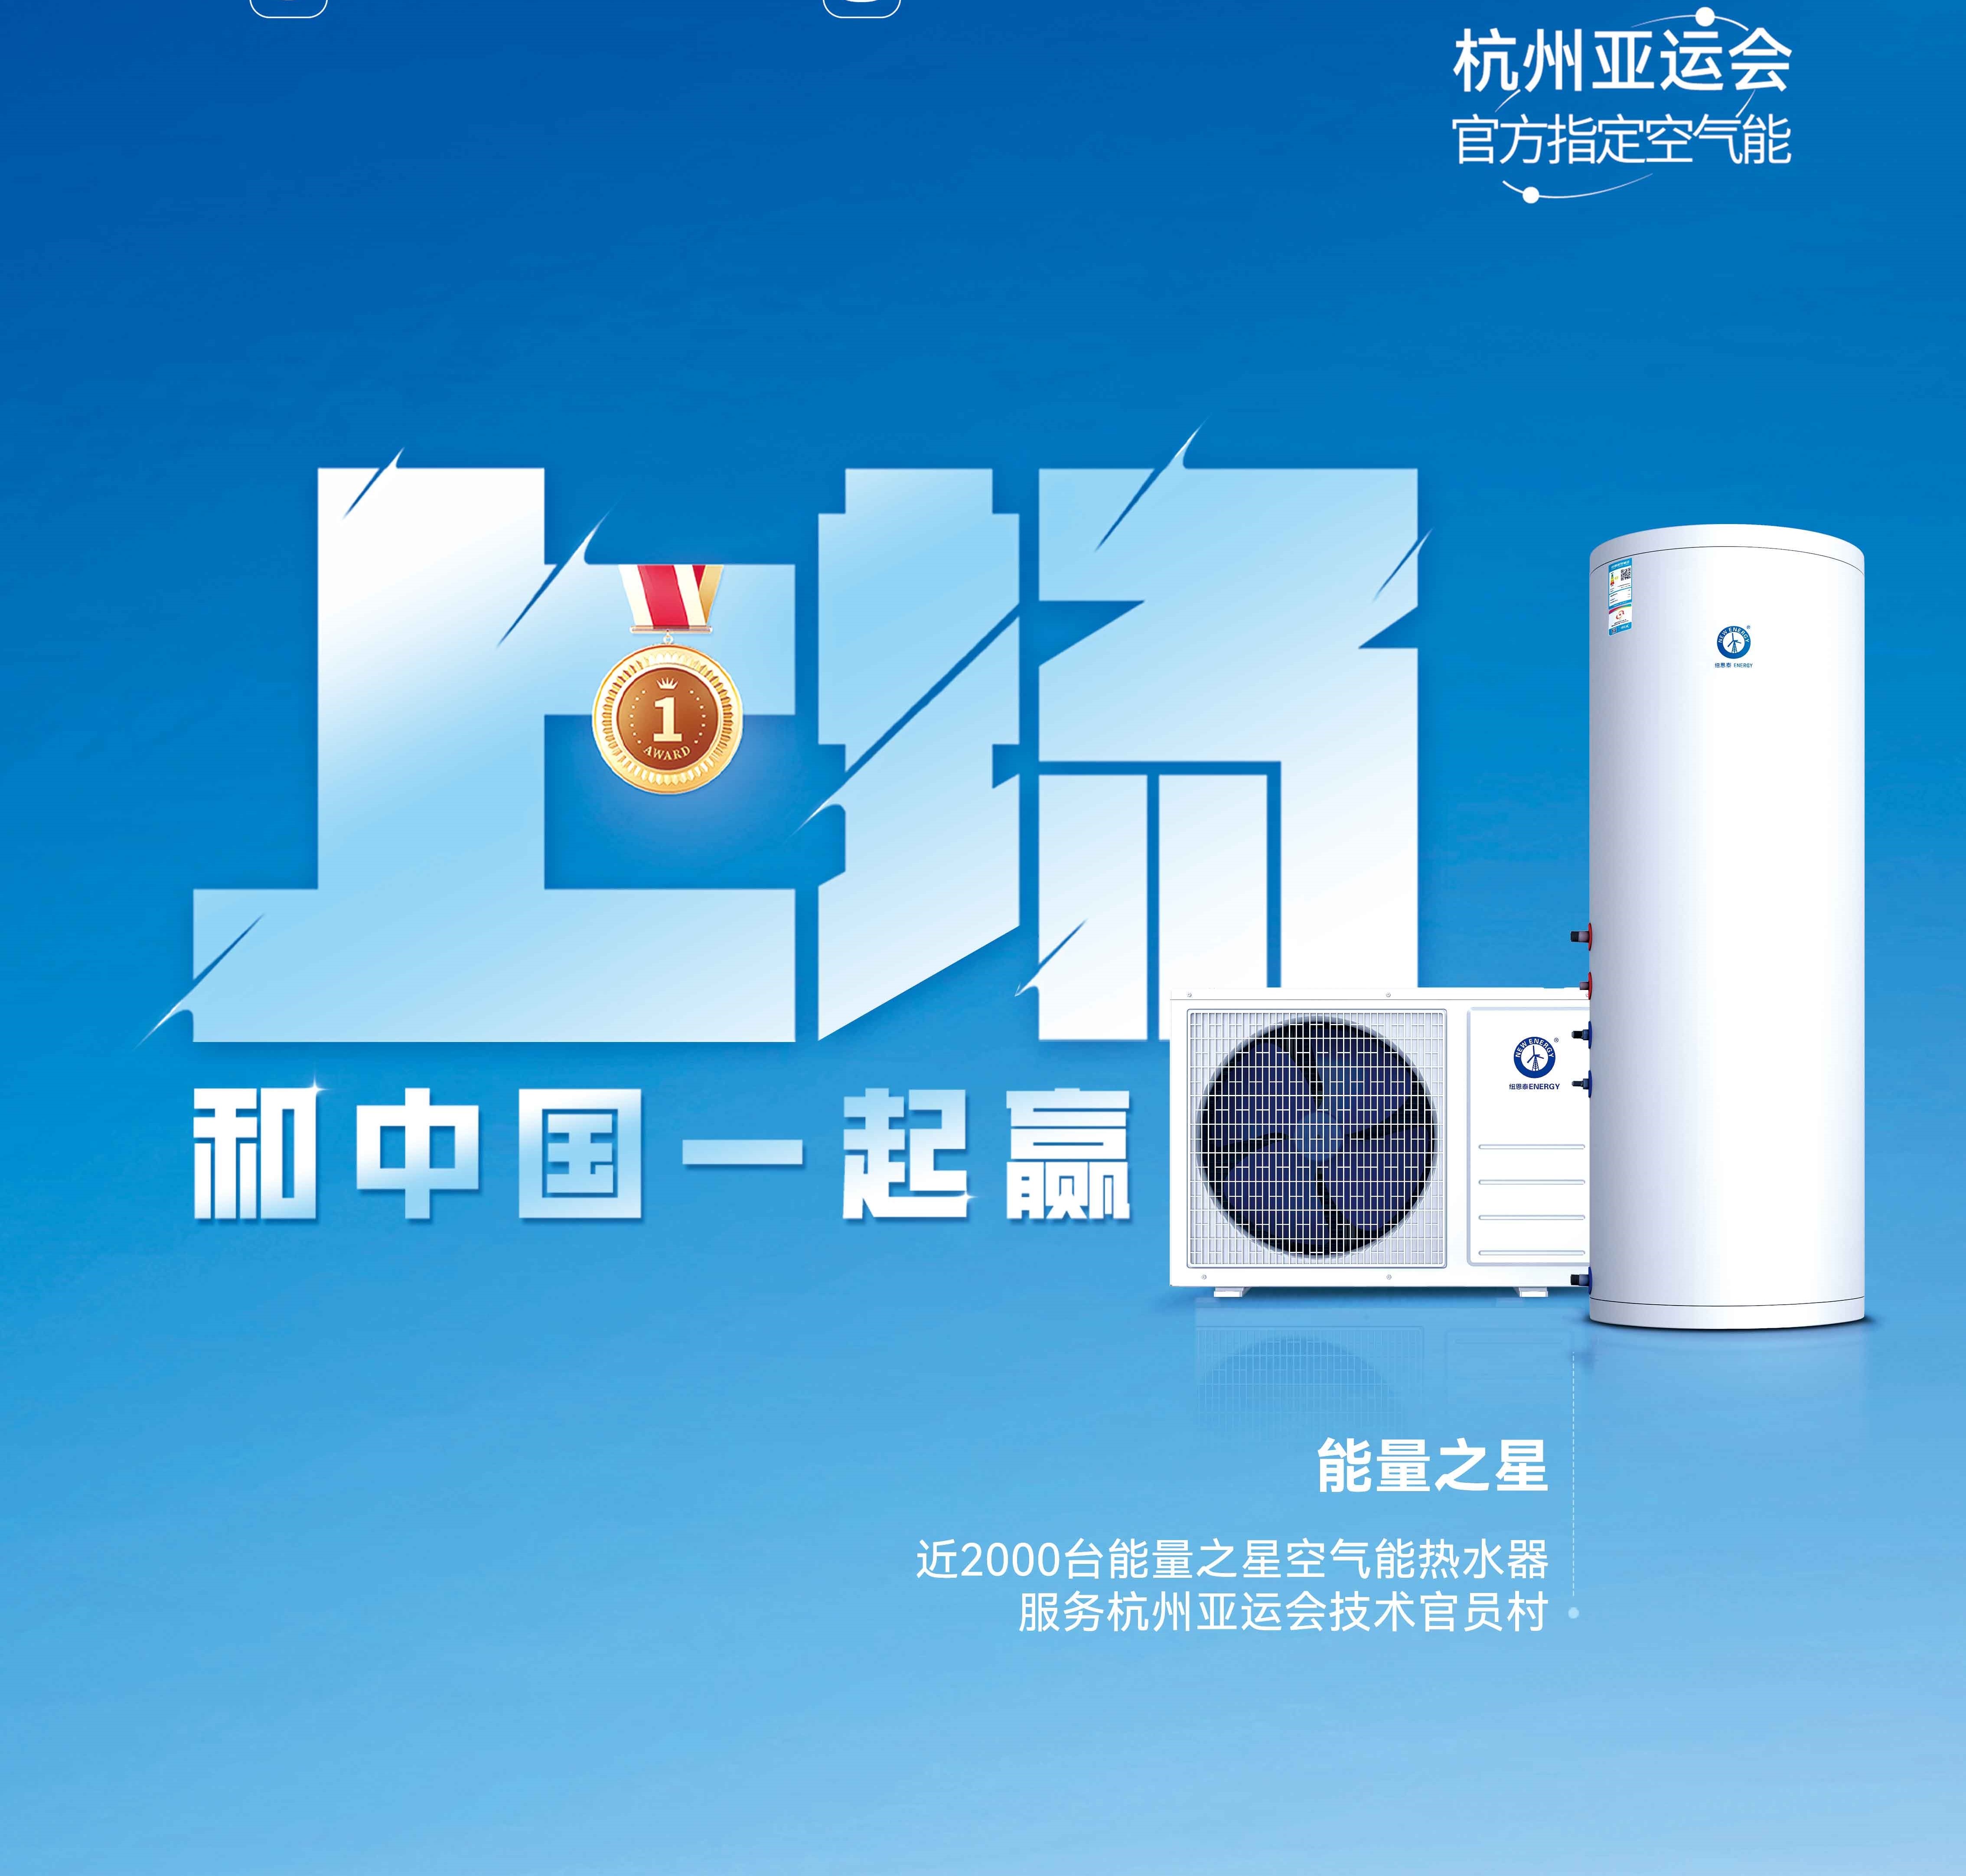 【欧洲杯球赛在哪里买空气能热水器】杭州亚运会亚运技术官员村的热水器用的是哪个供应商的产品？